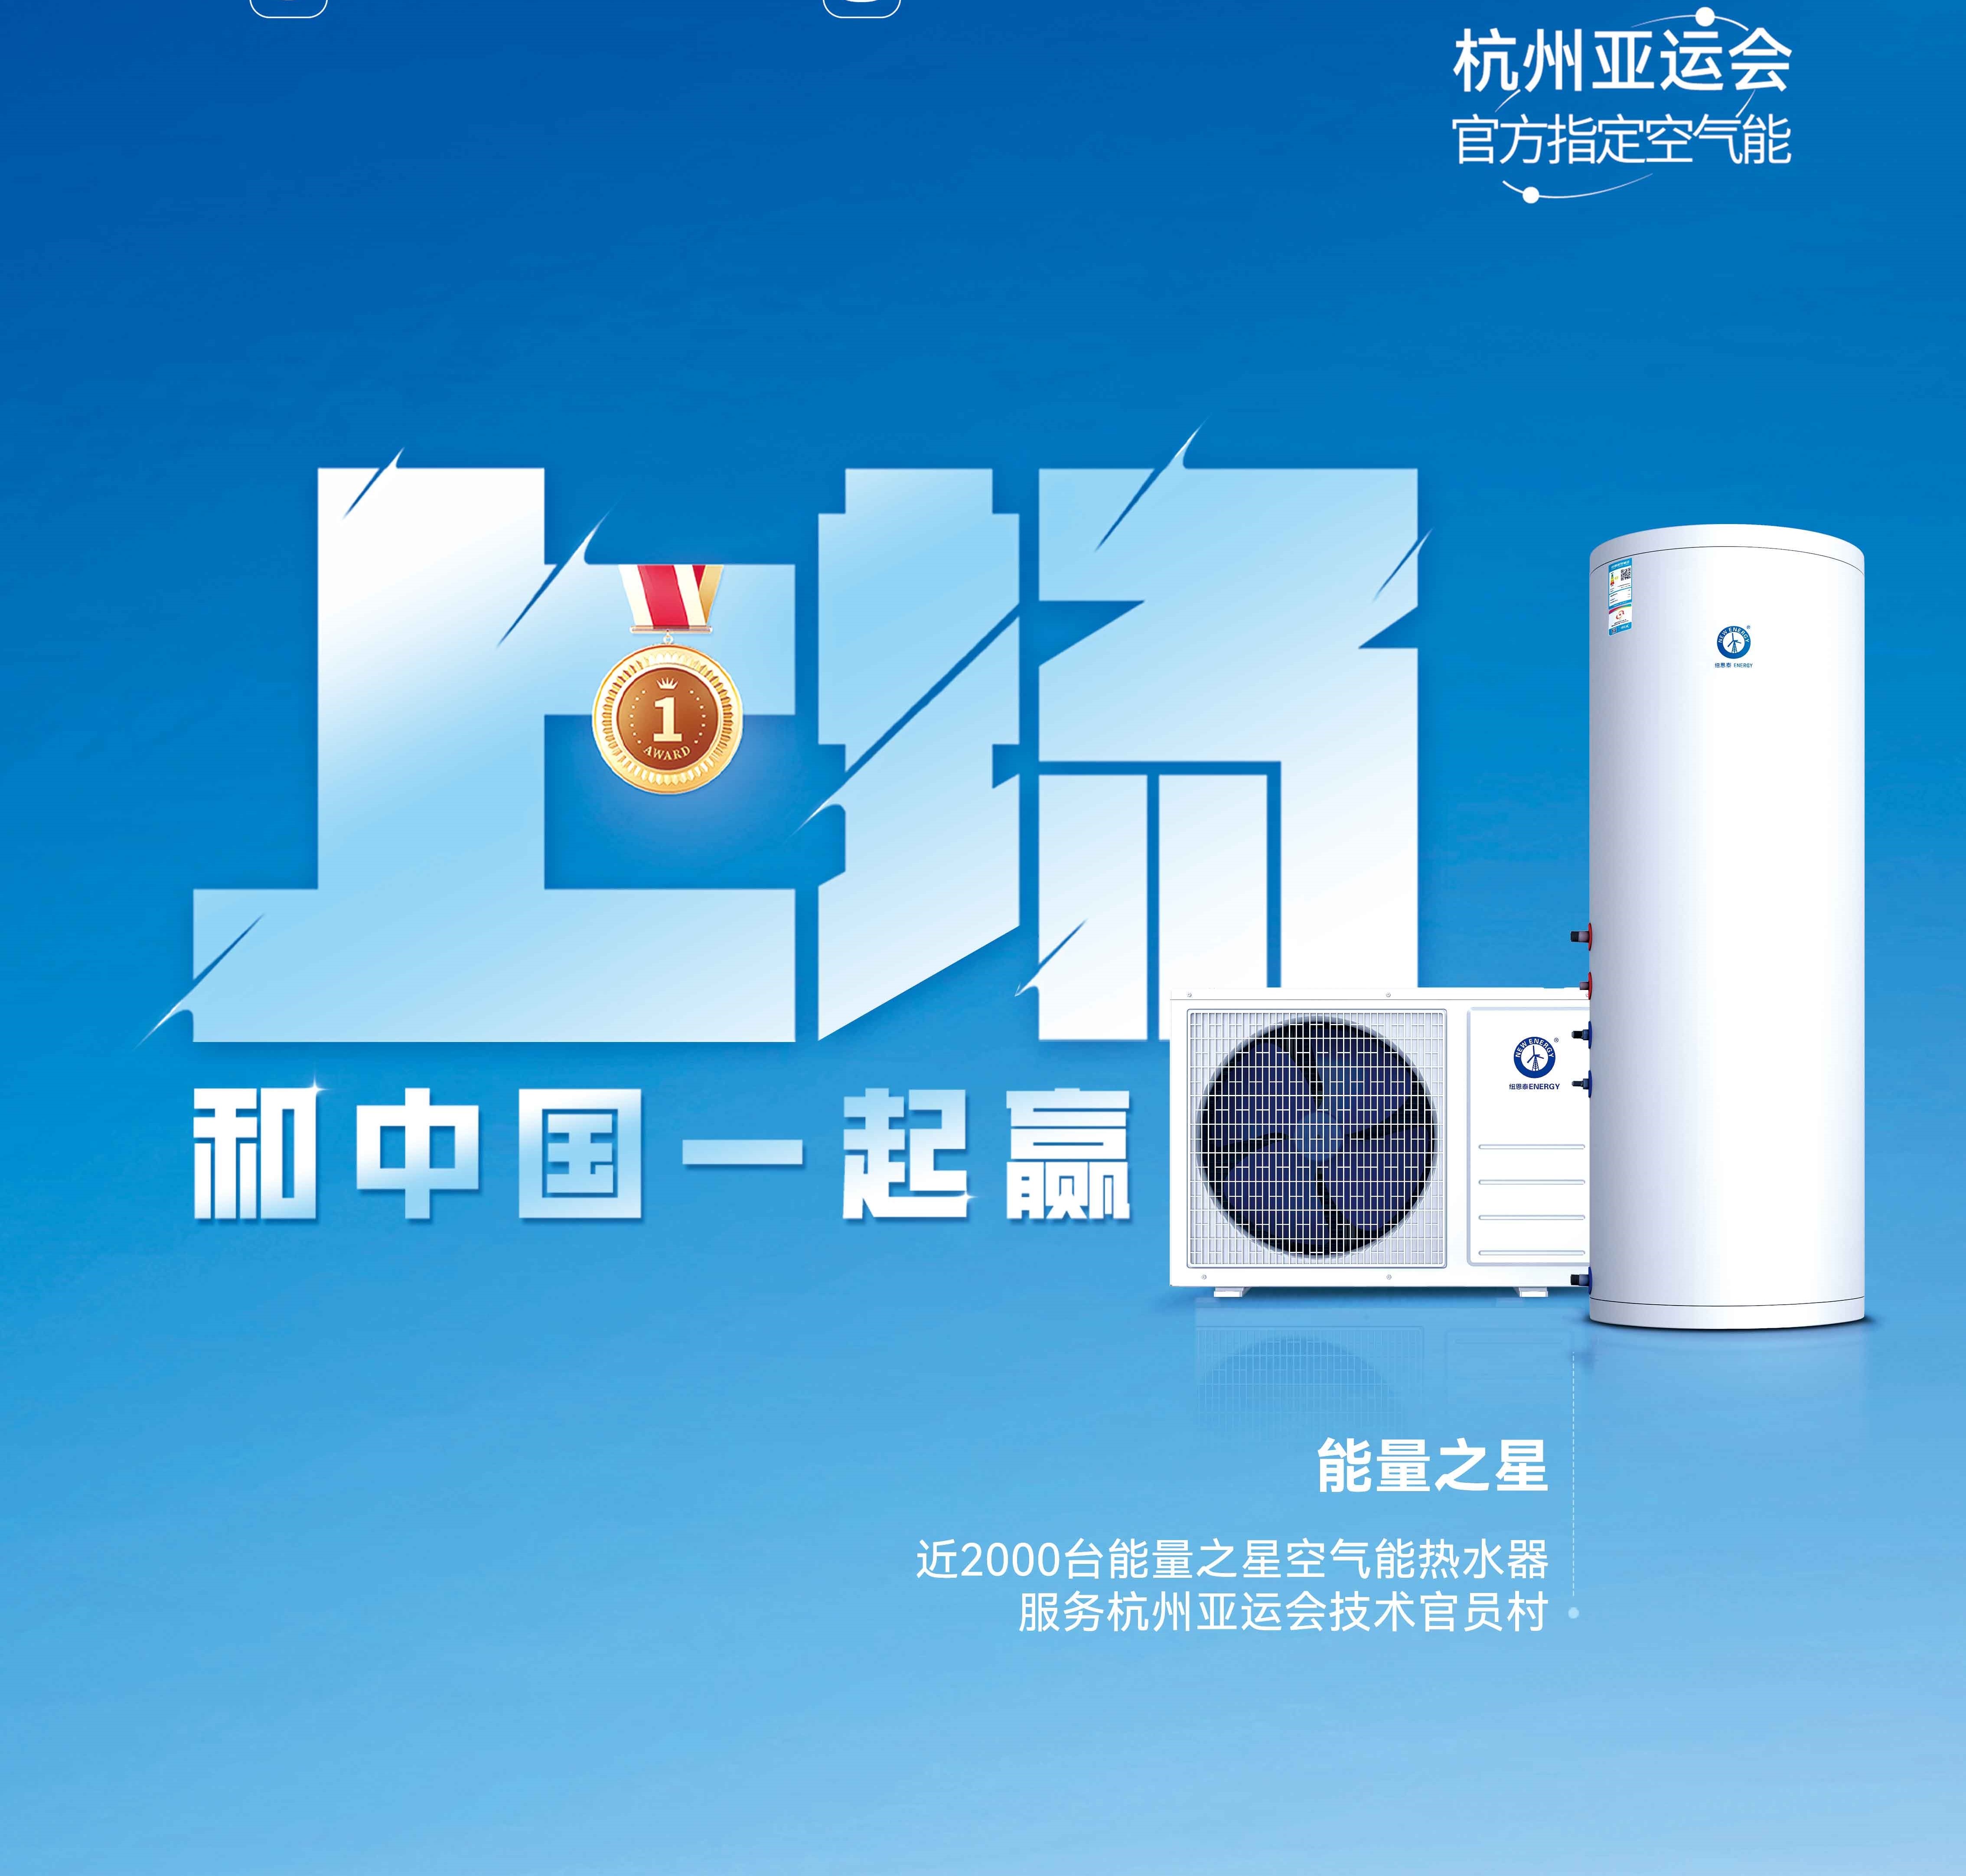 【欧洲杯球赛在哪里买空气能热水器】杭州亚运会亚运技术官员村的热水器用的是哪个供应商的产品？